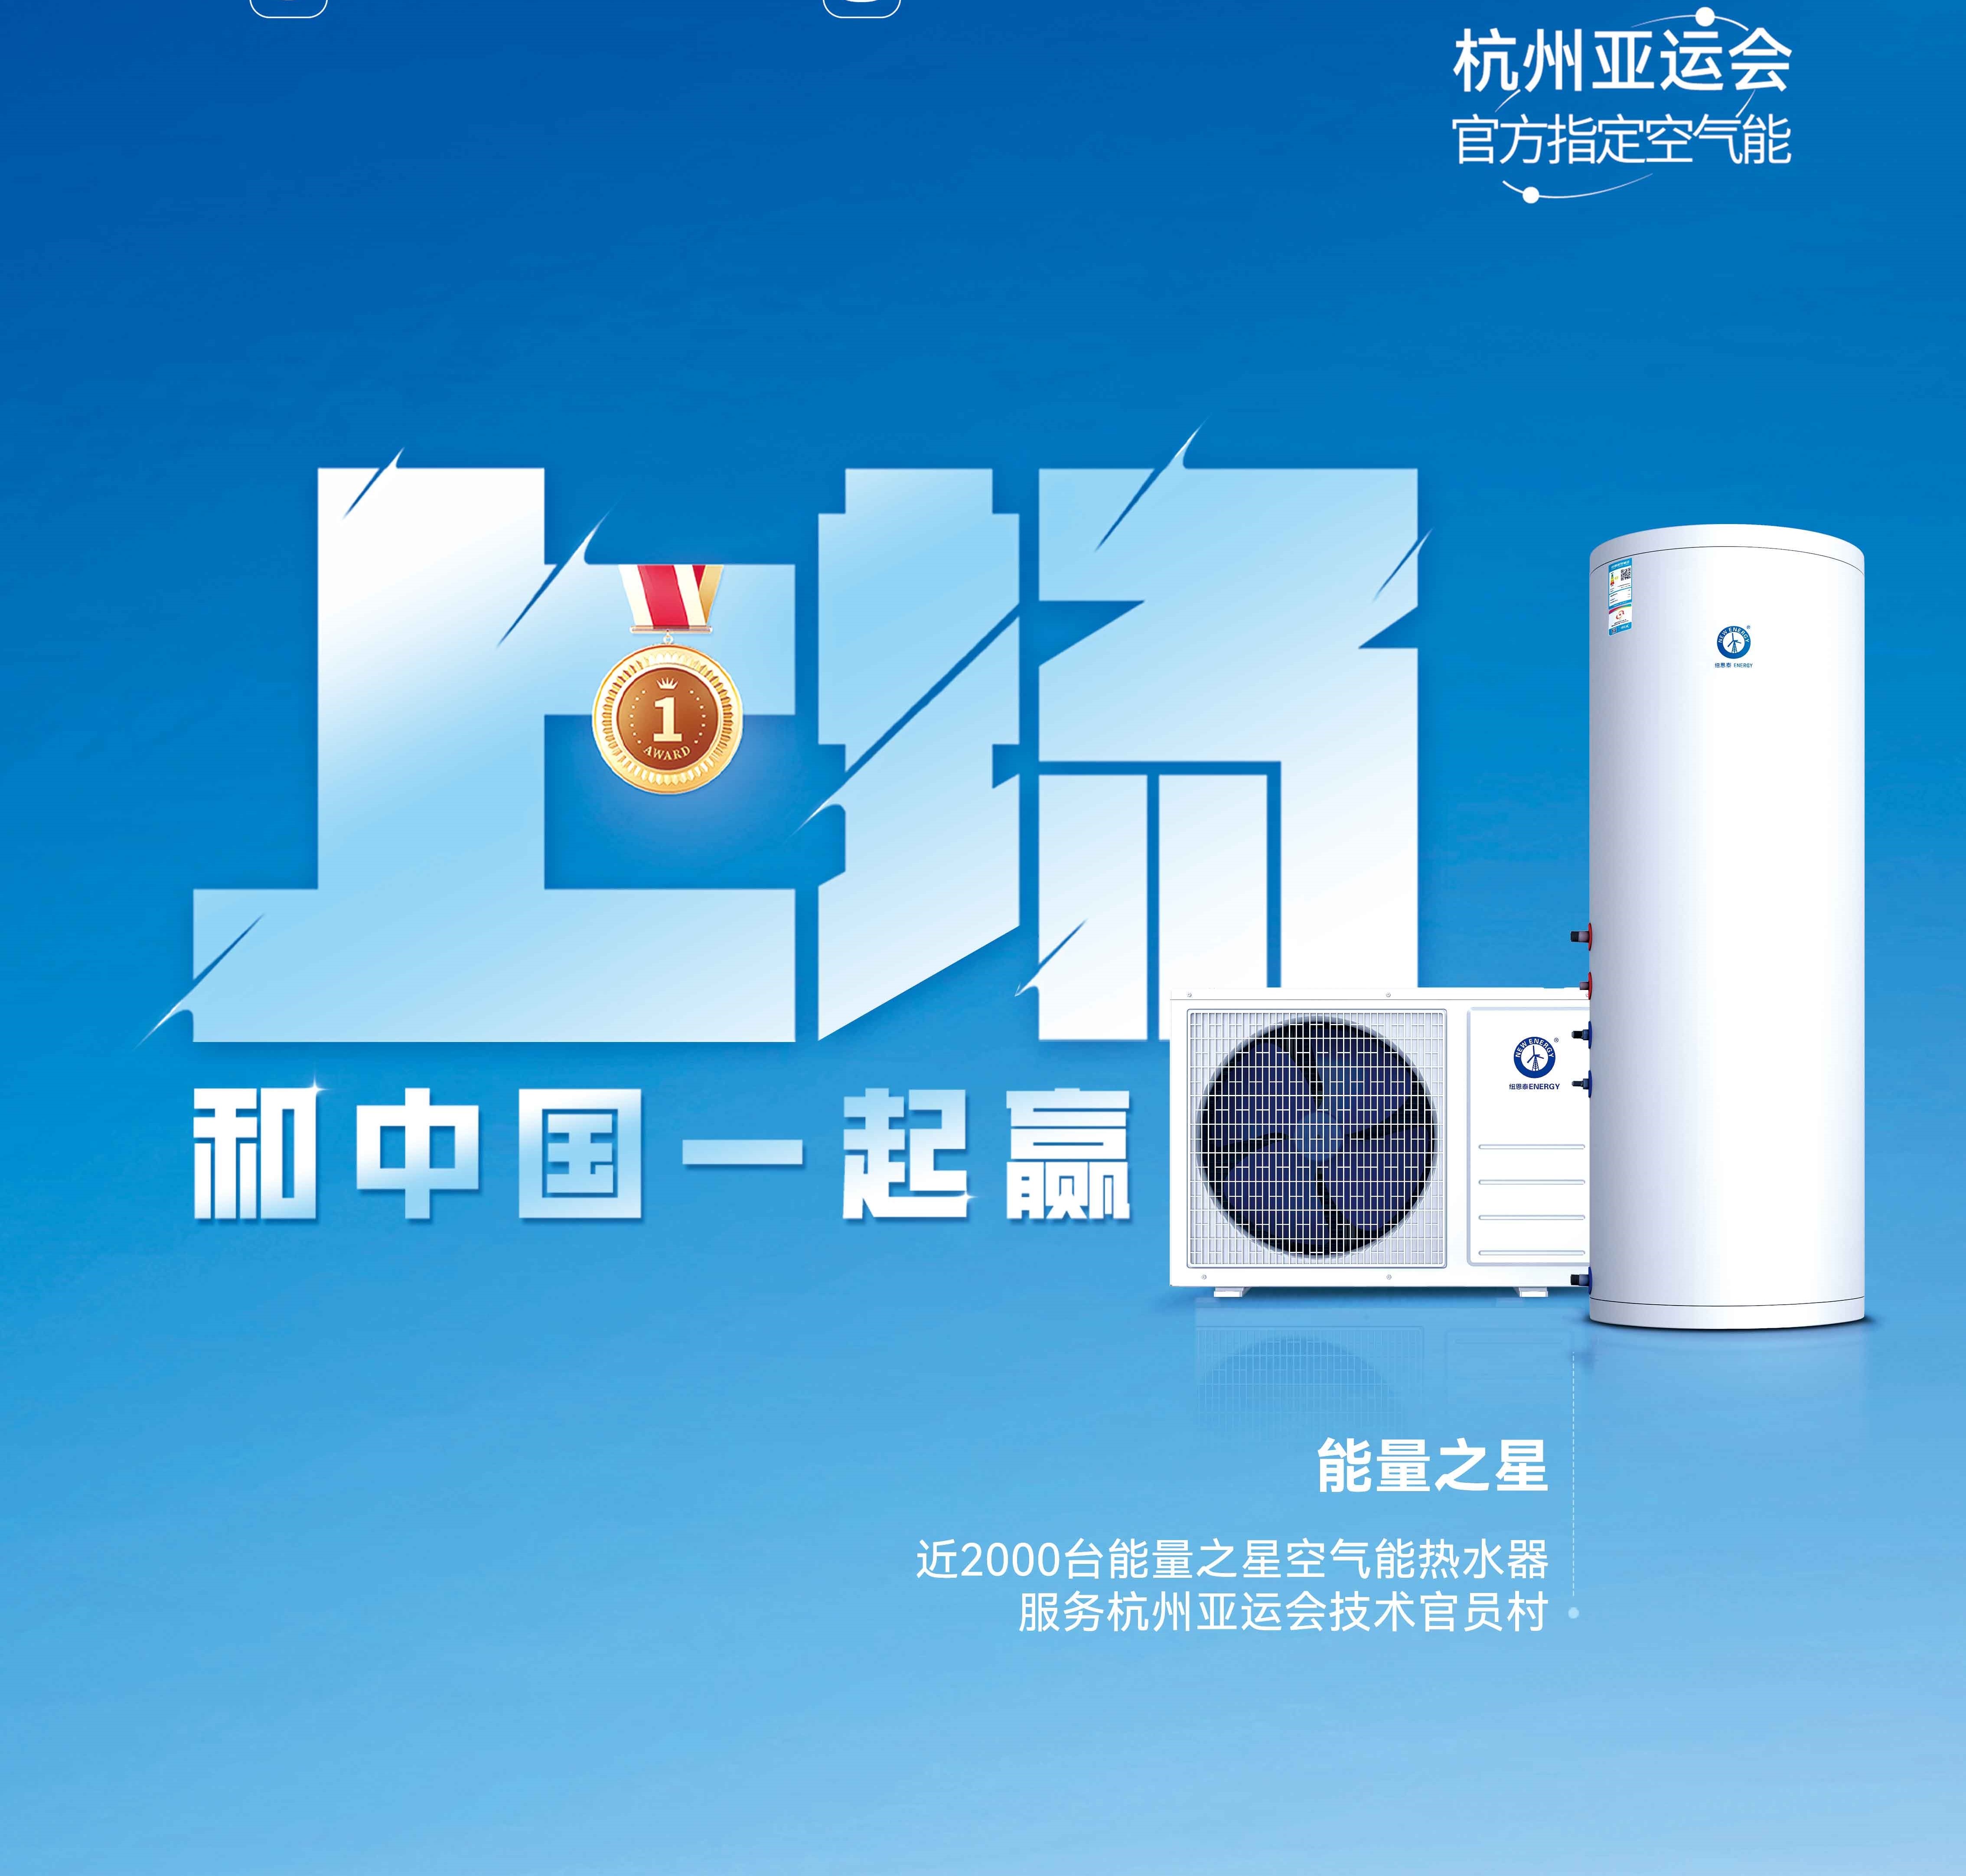 【欧洲杯球赛在哪里买空气能热水器】杭州亚运会亚运技术官员村的热水器用的是哪个供应商的产品？